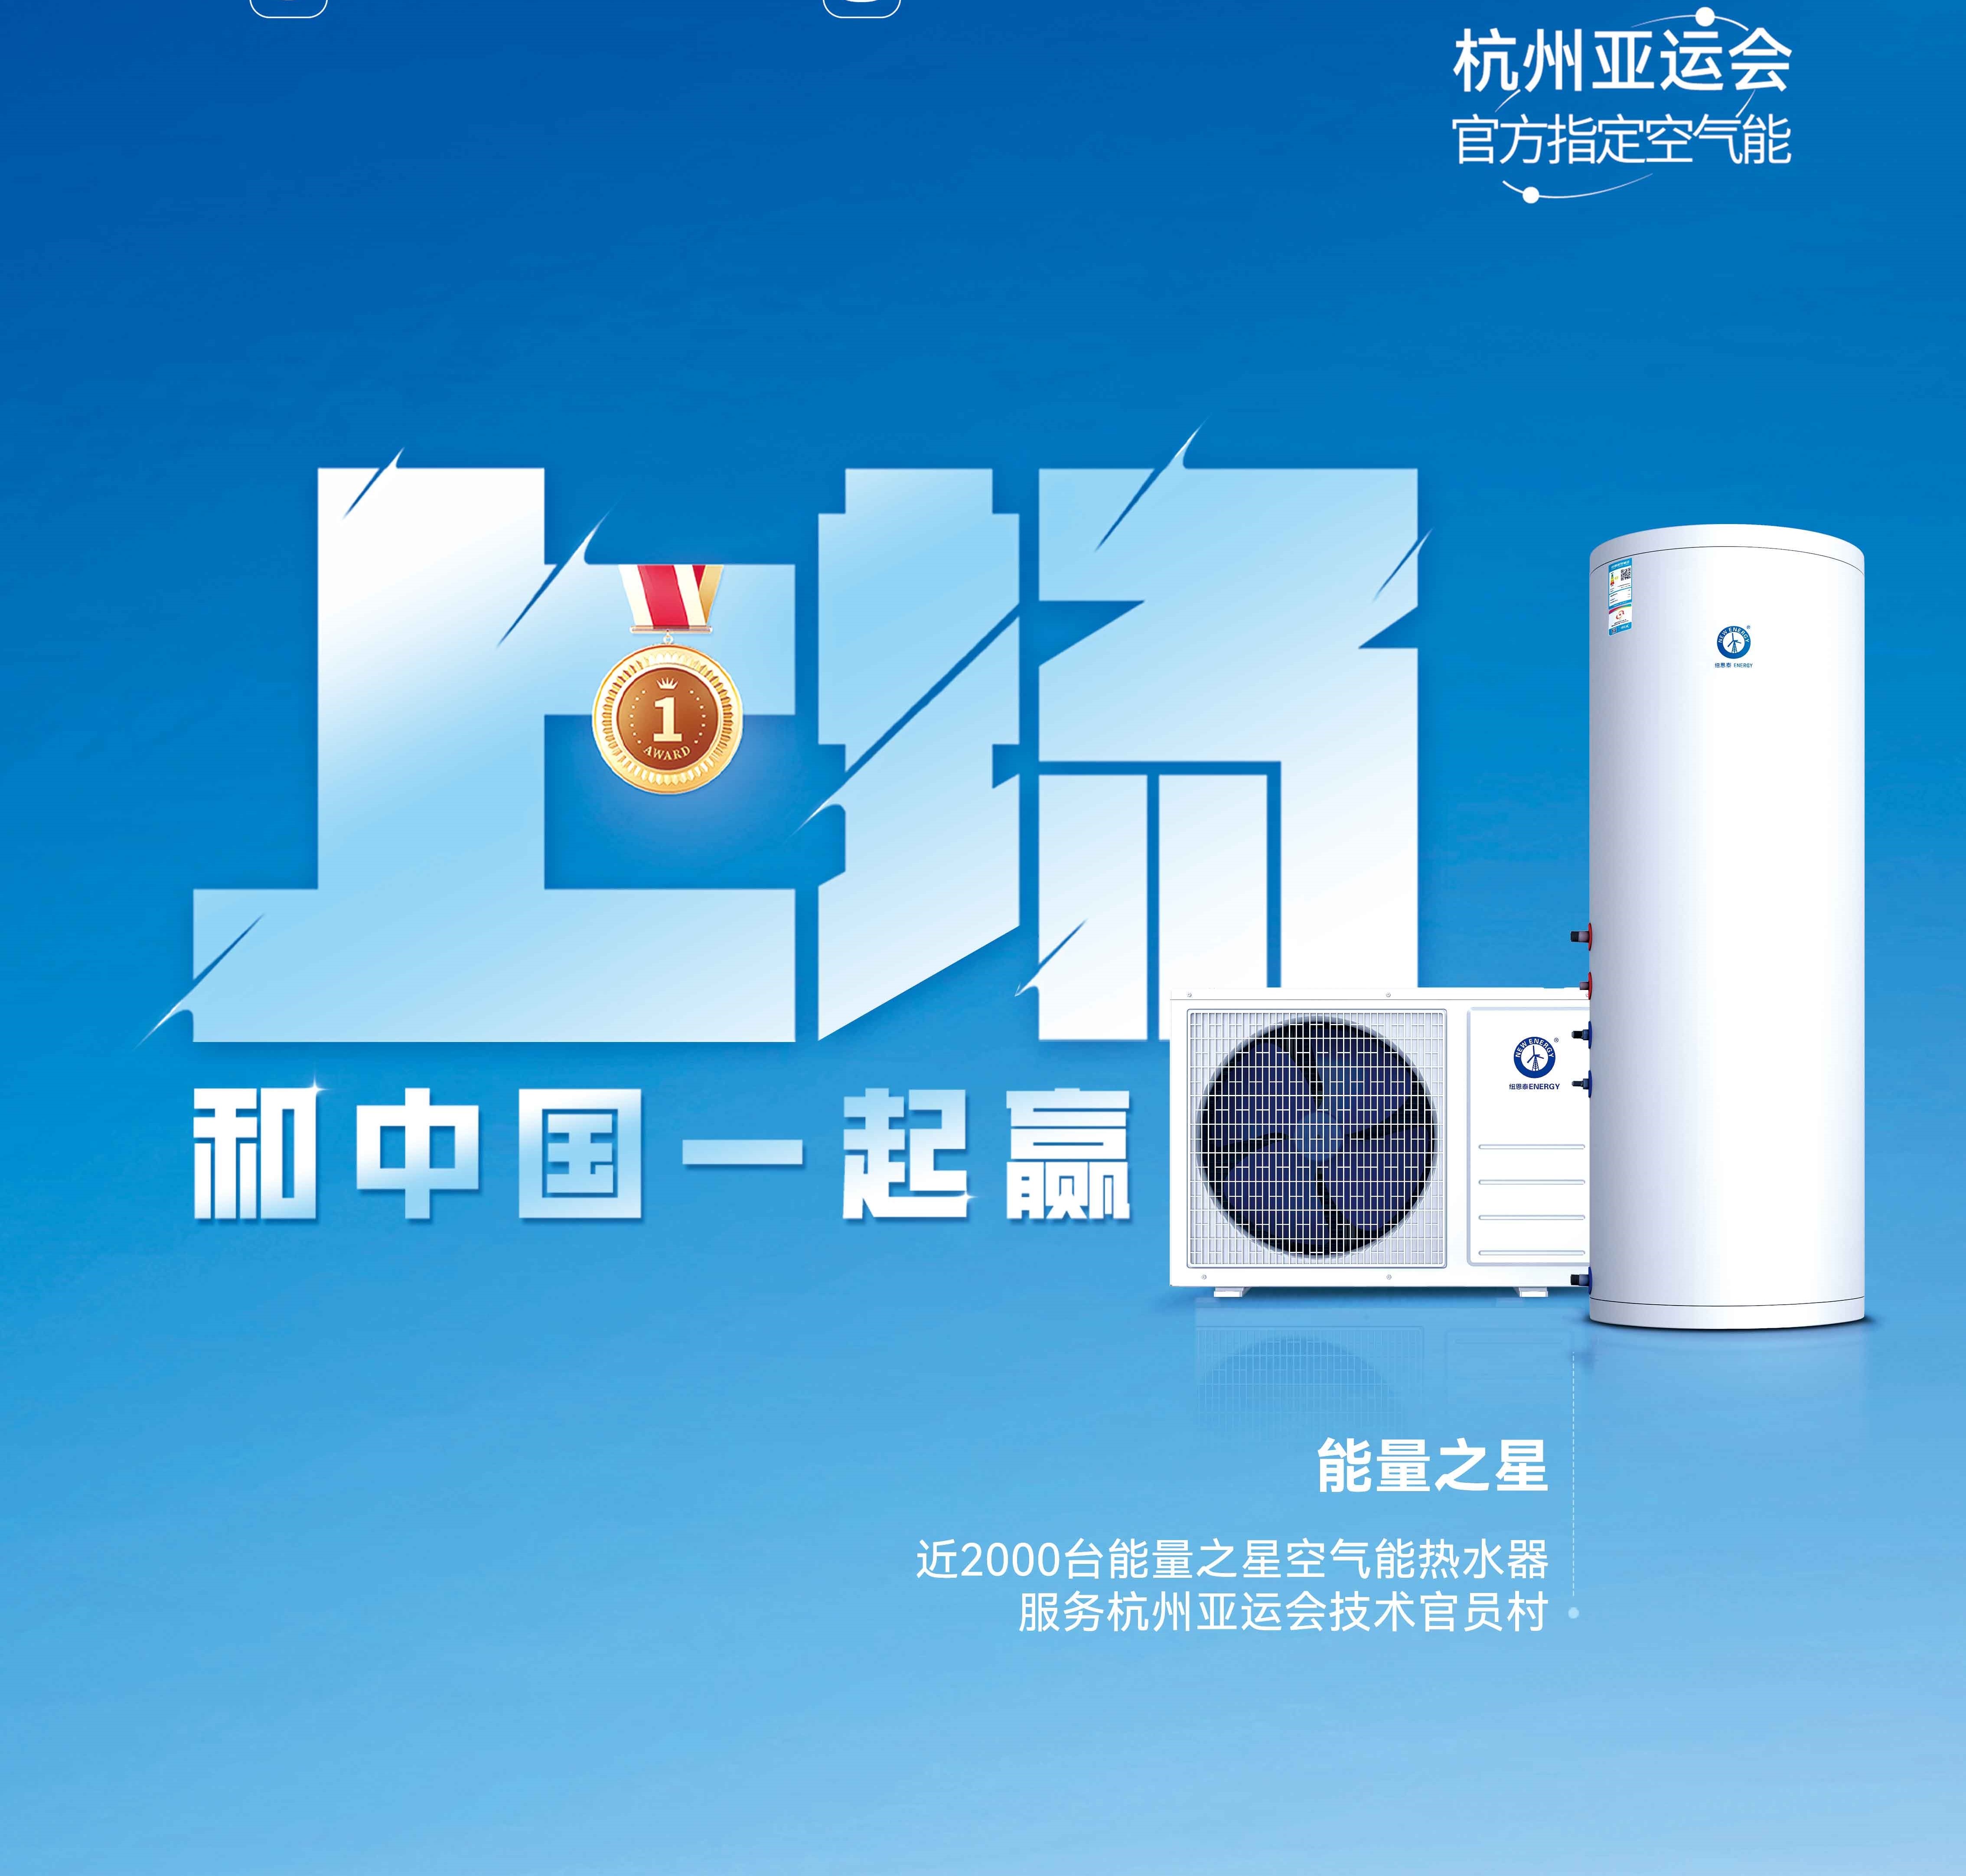 【欧洲杯球赛在哪里买空气能热水器】杭州亚运会亚运技术官员村的热水器用的是哪个供应商的产品？